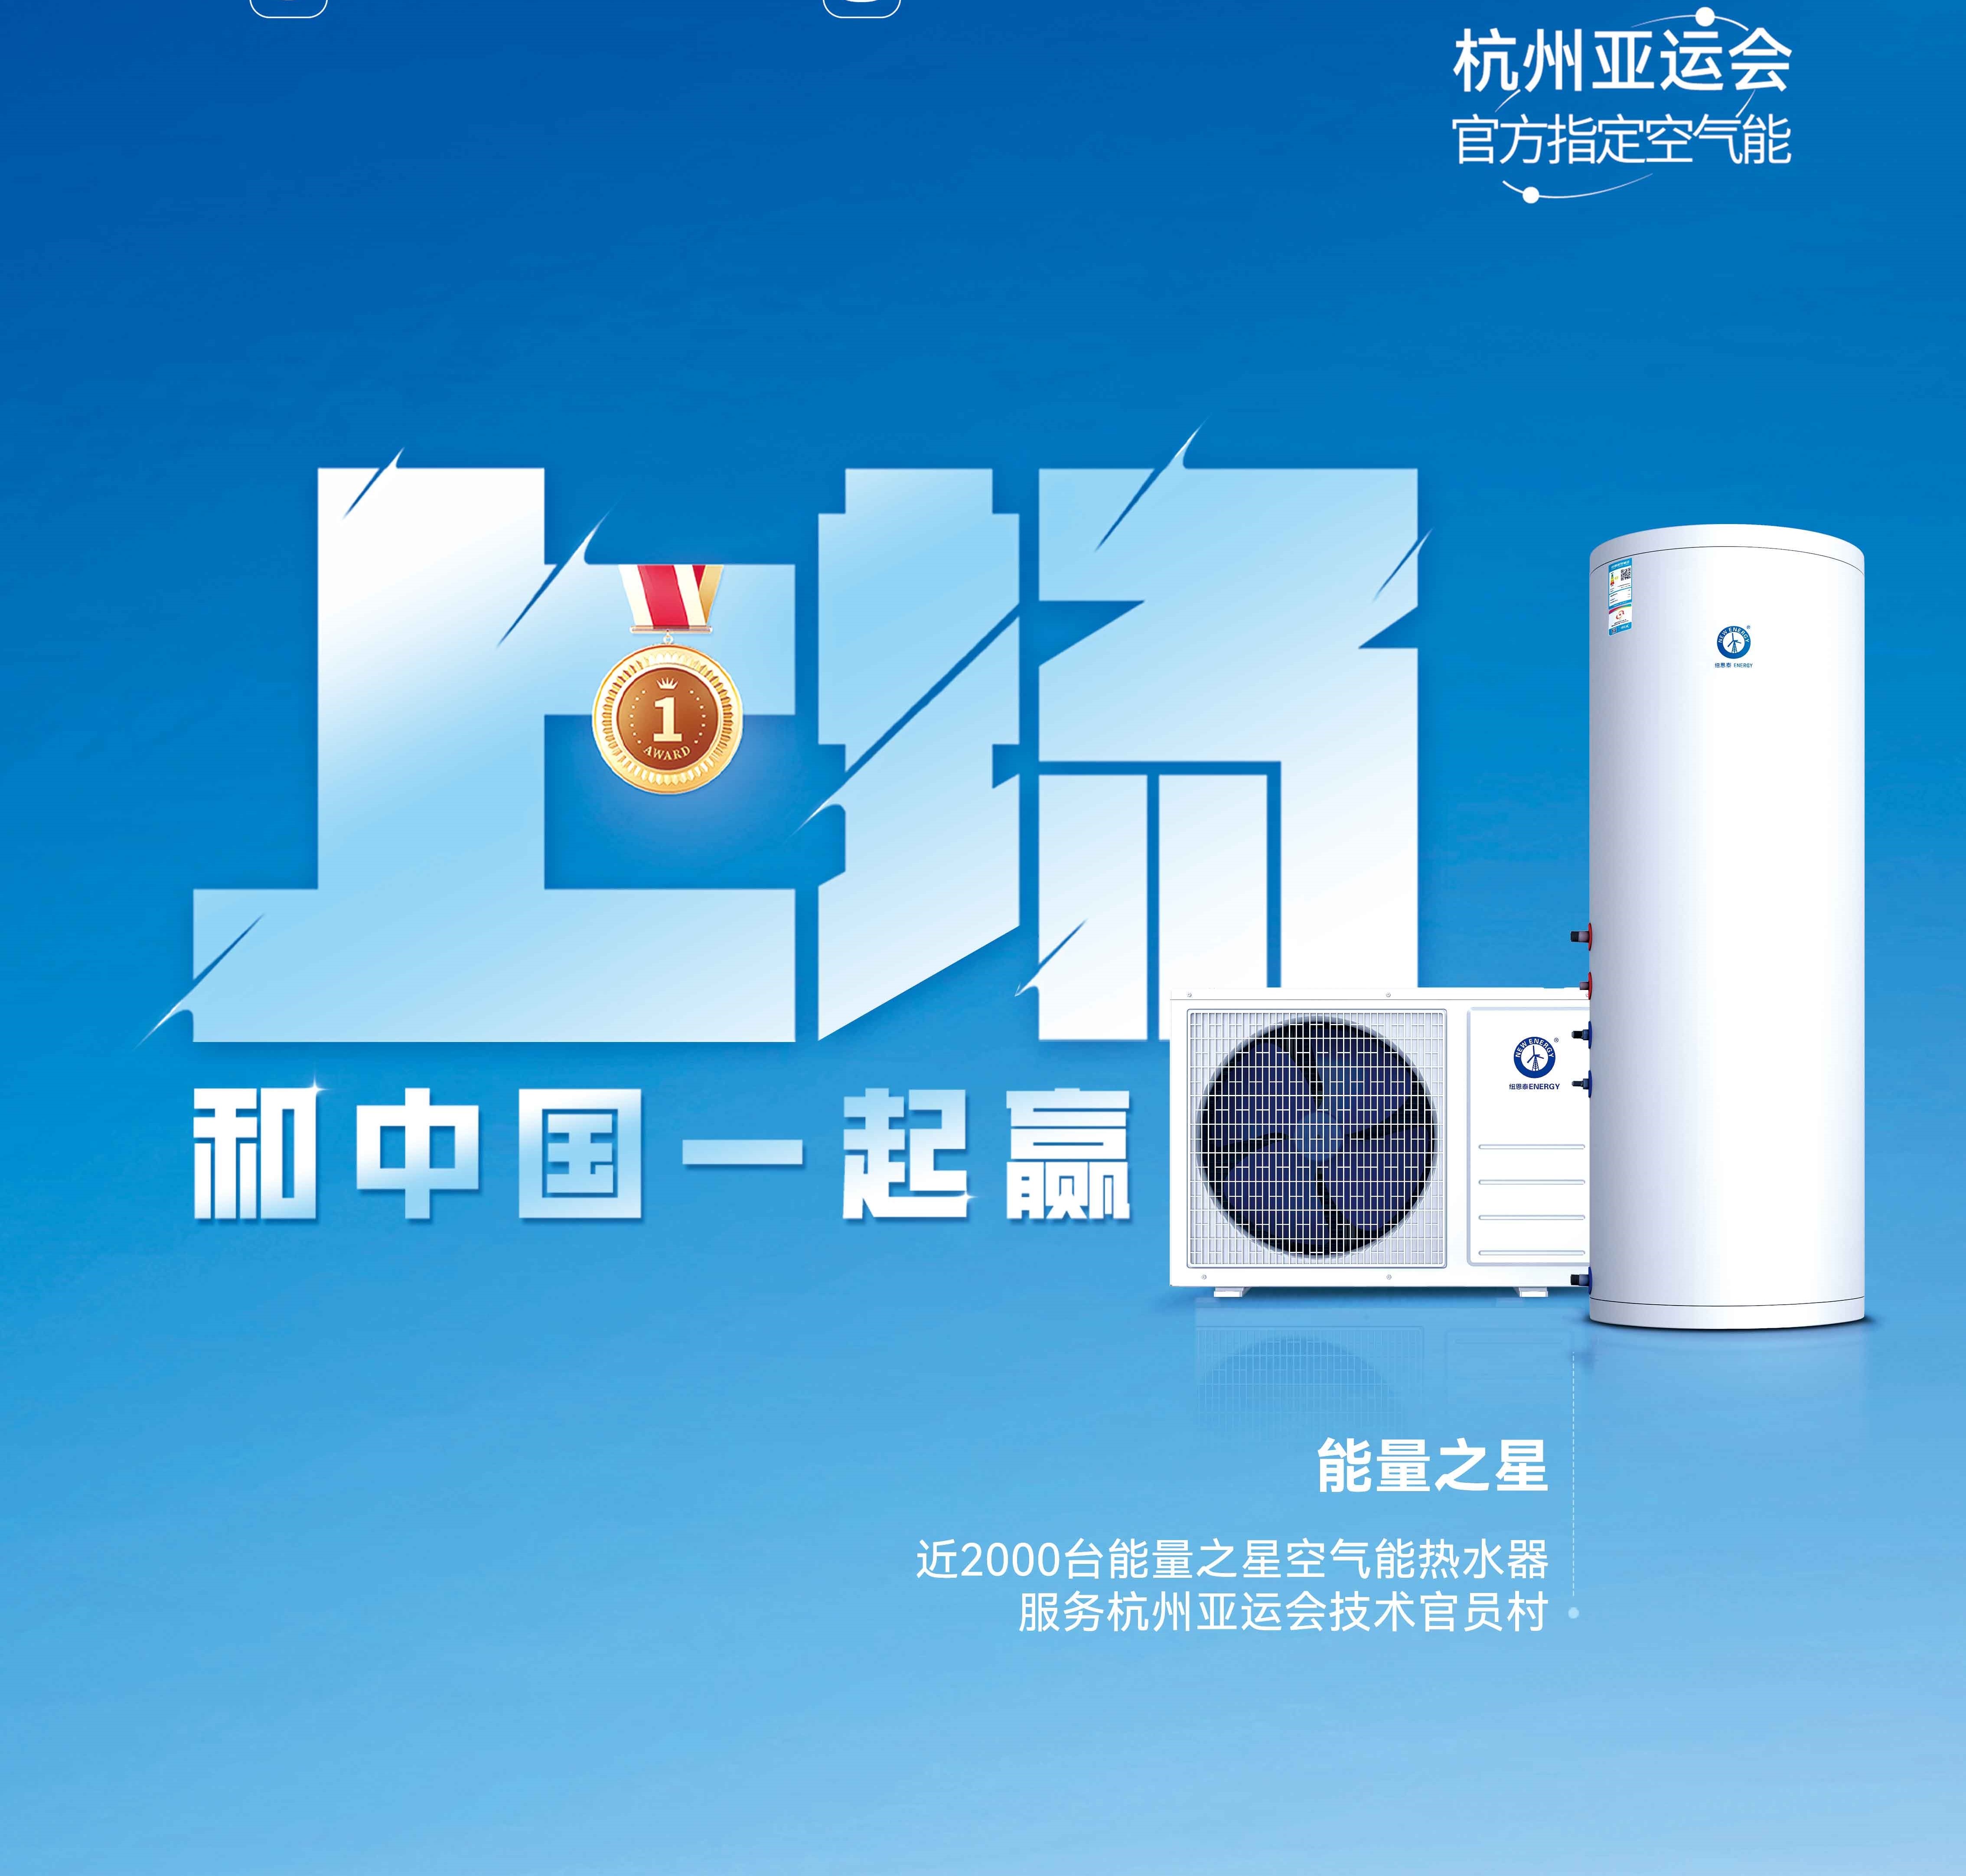 【欧洲杯球赛在哪里买空气能热水器】杭州亚运会亚运技术官员村的热水器用的是哪个供应商的产品？